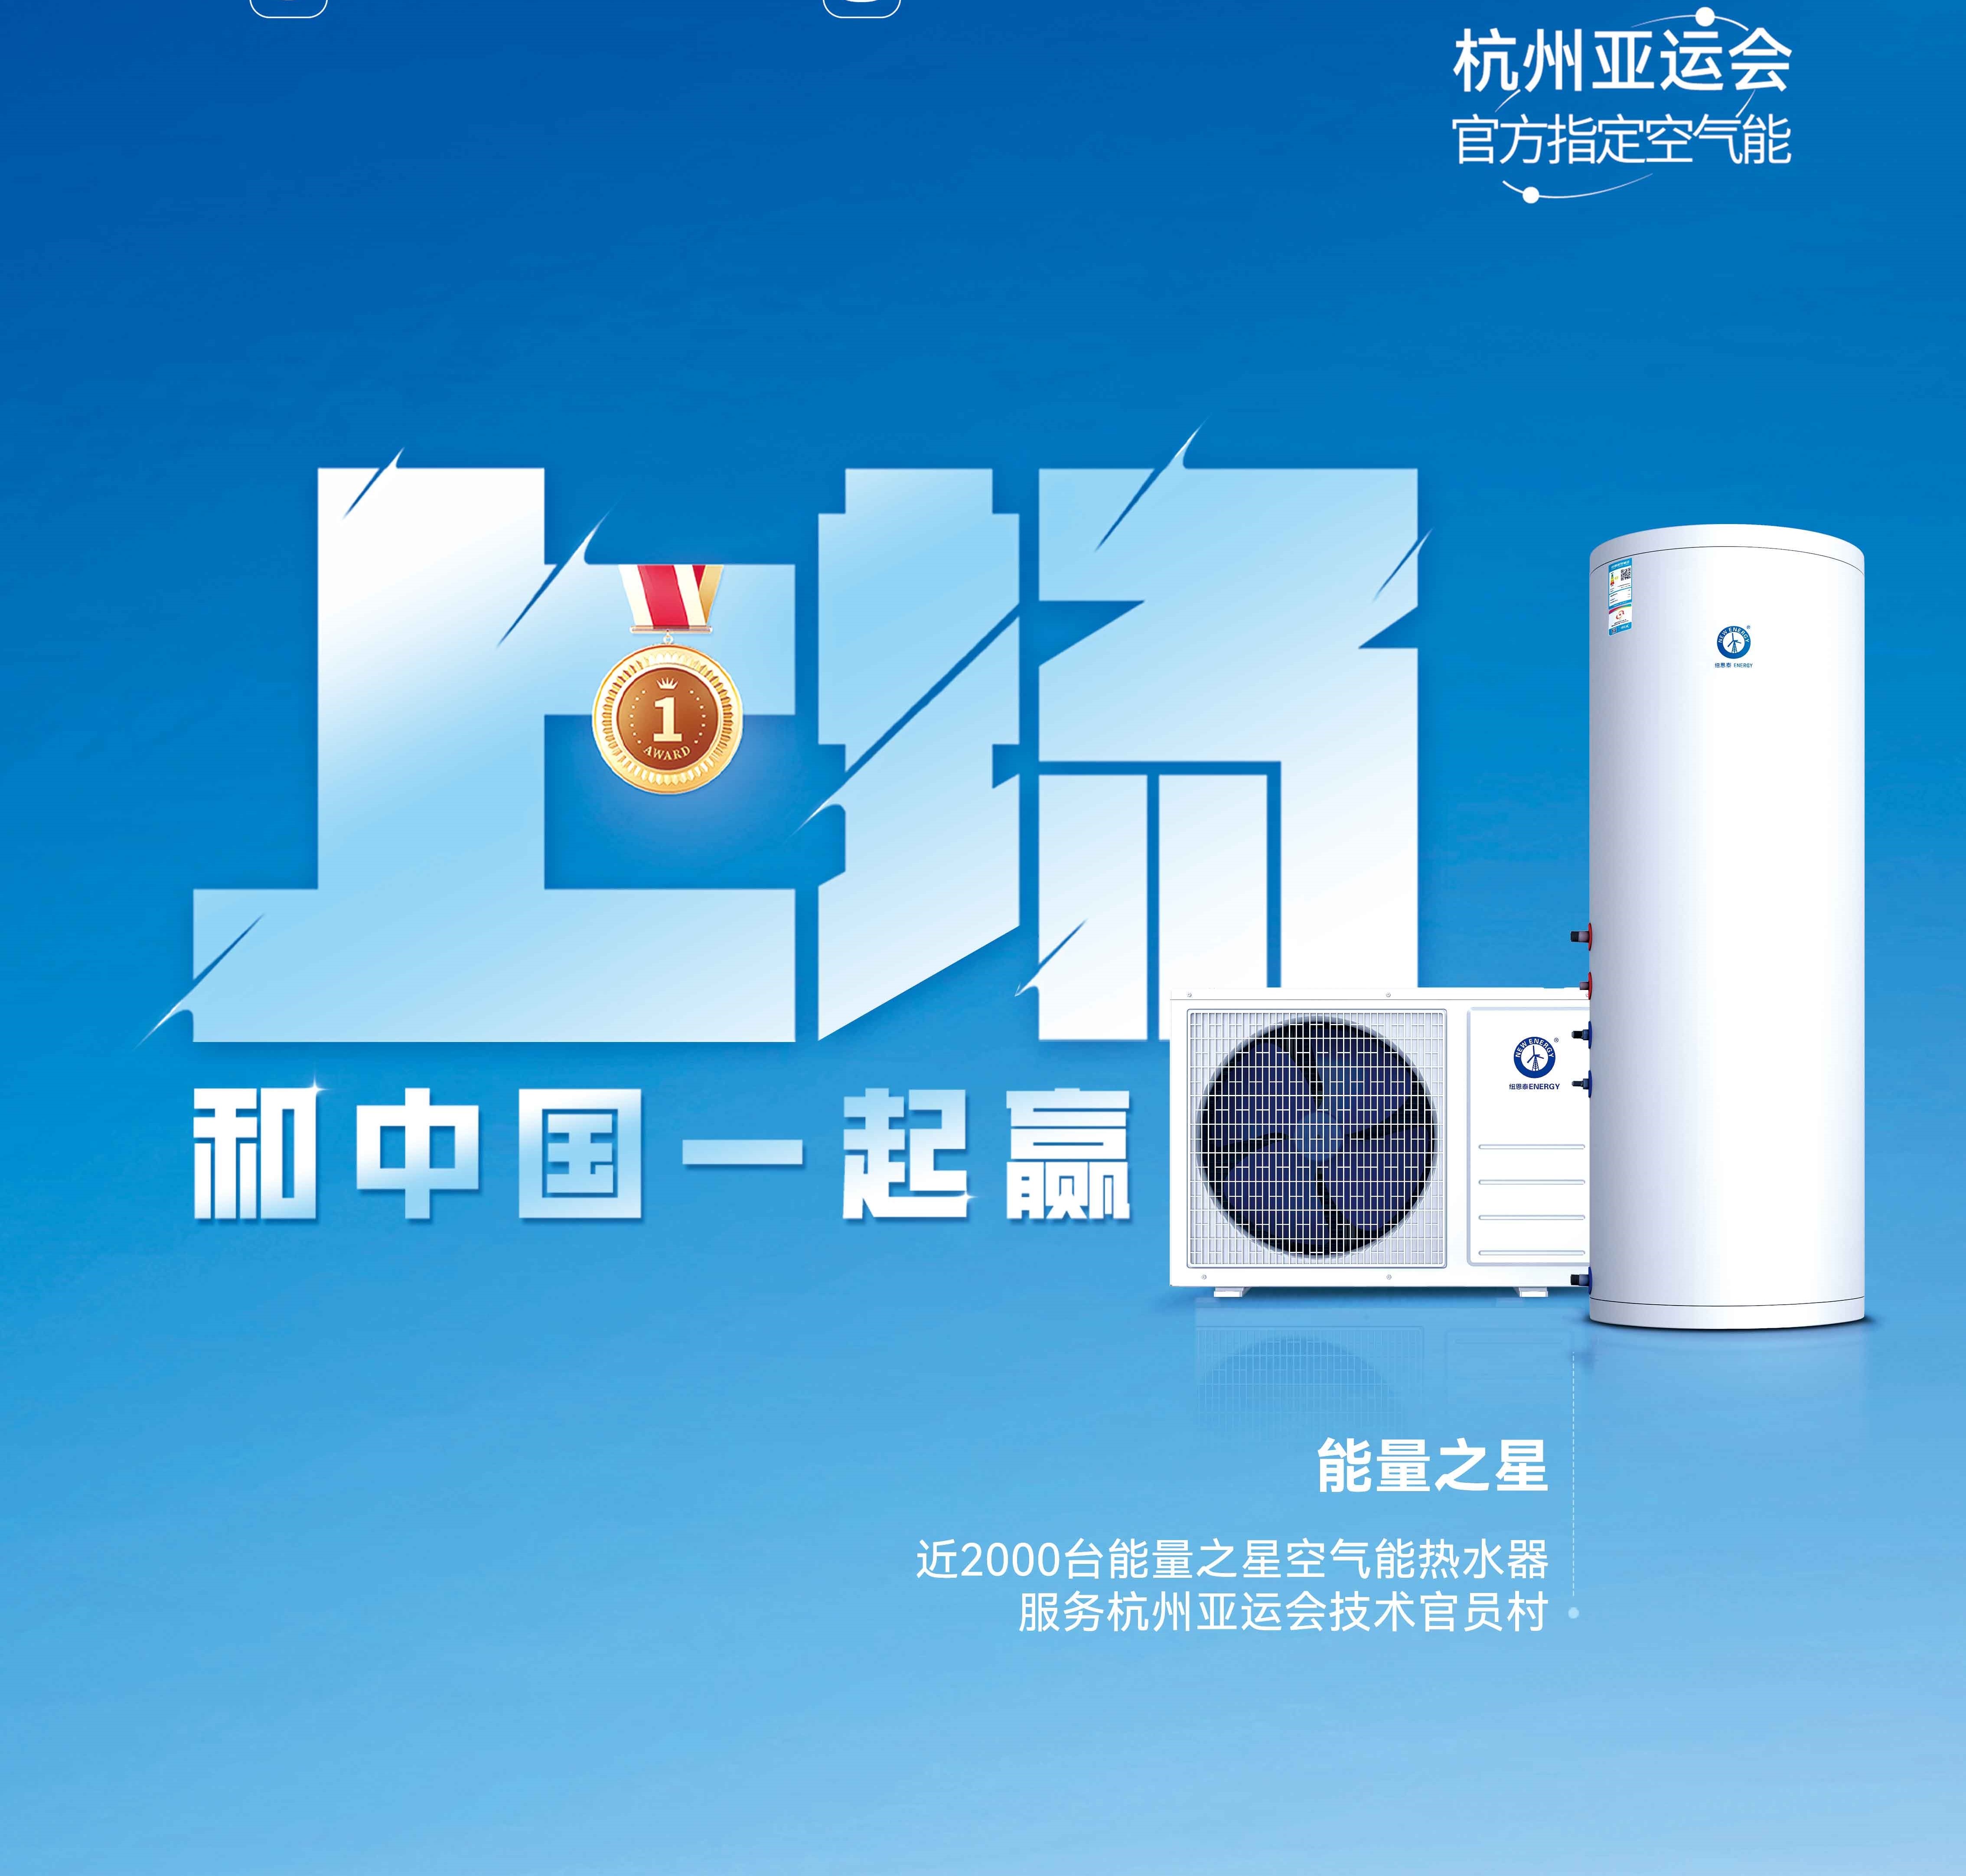 【欧洲杯球赛在哪里买空气能热水器】杭州亚运会亚运技术官员村的热水器用的是哪个供应商的产品？